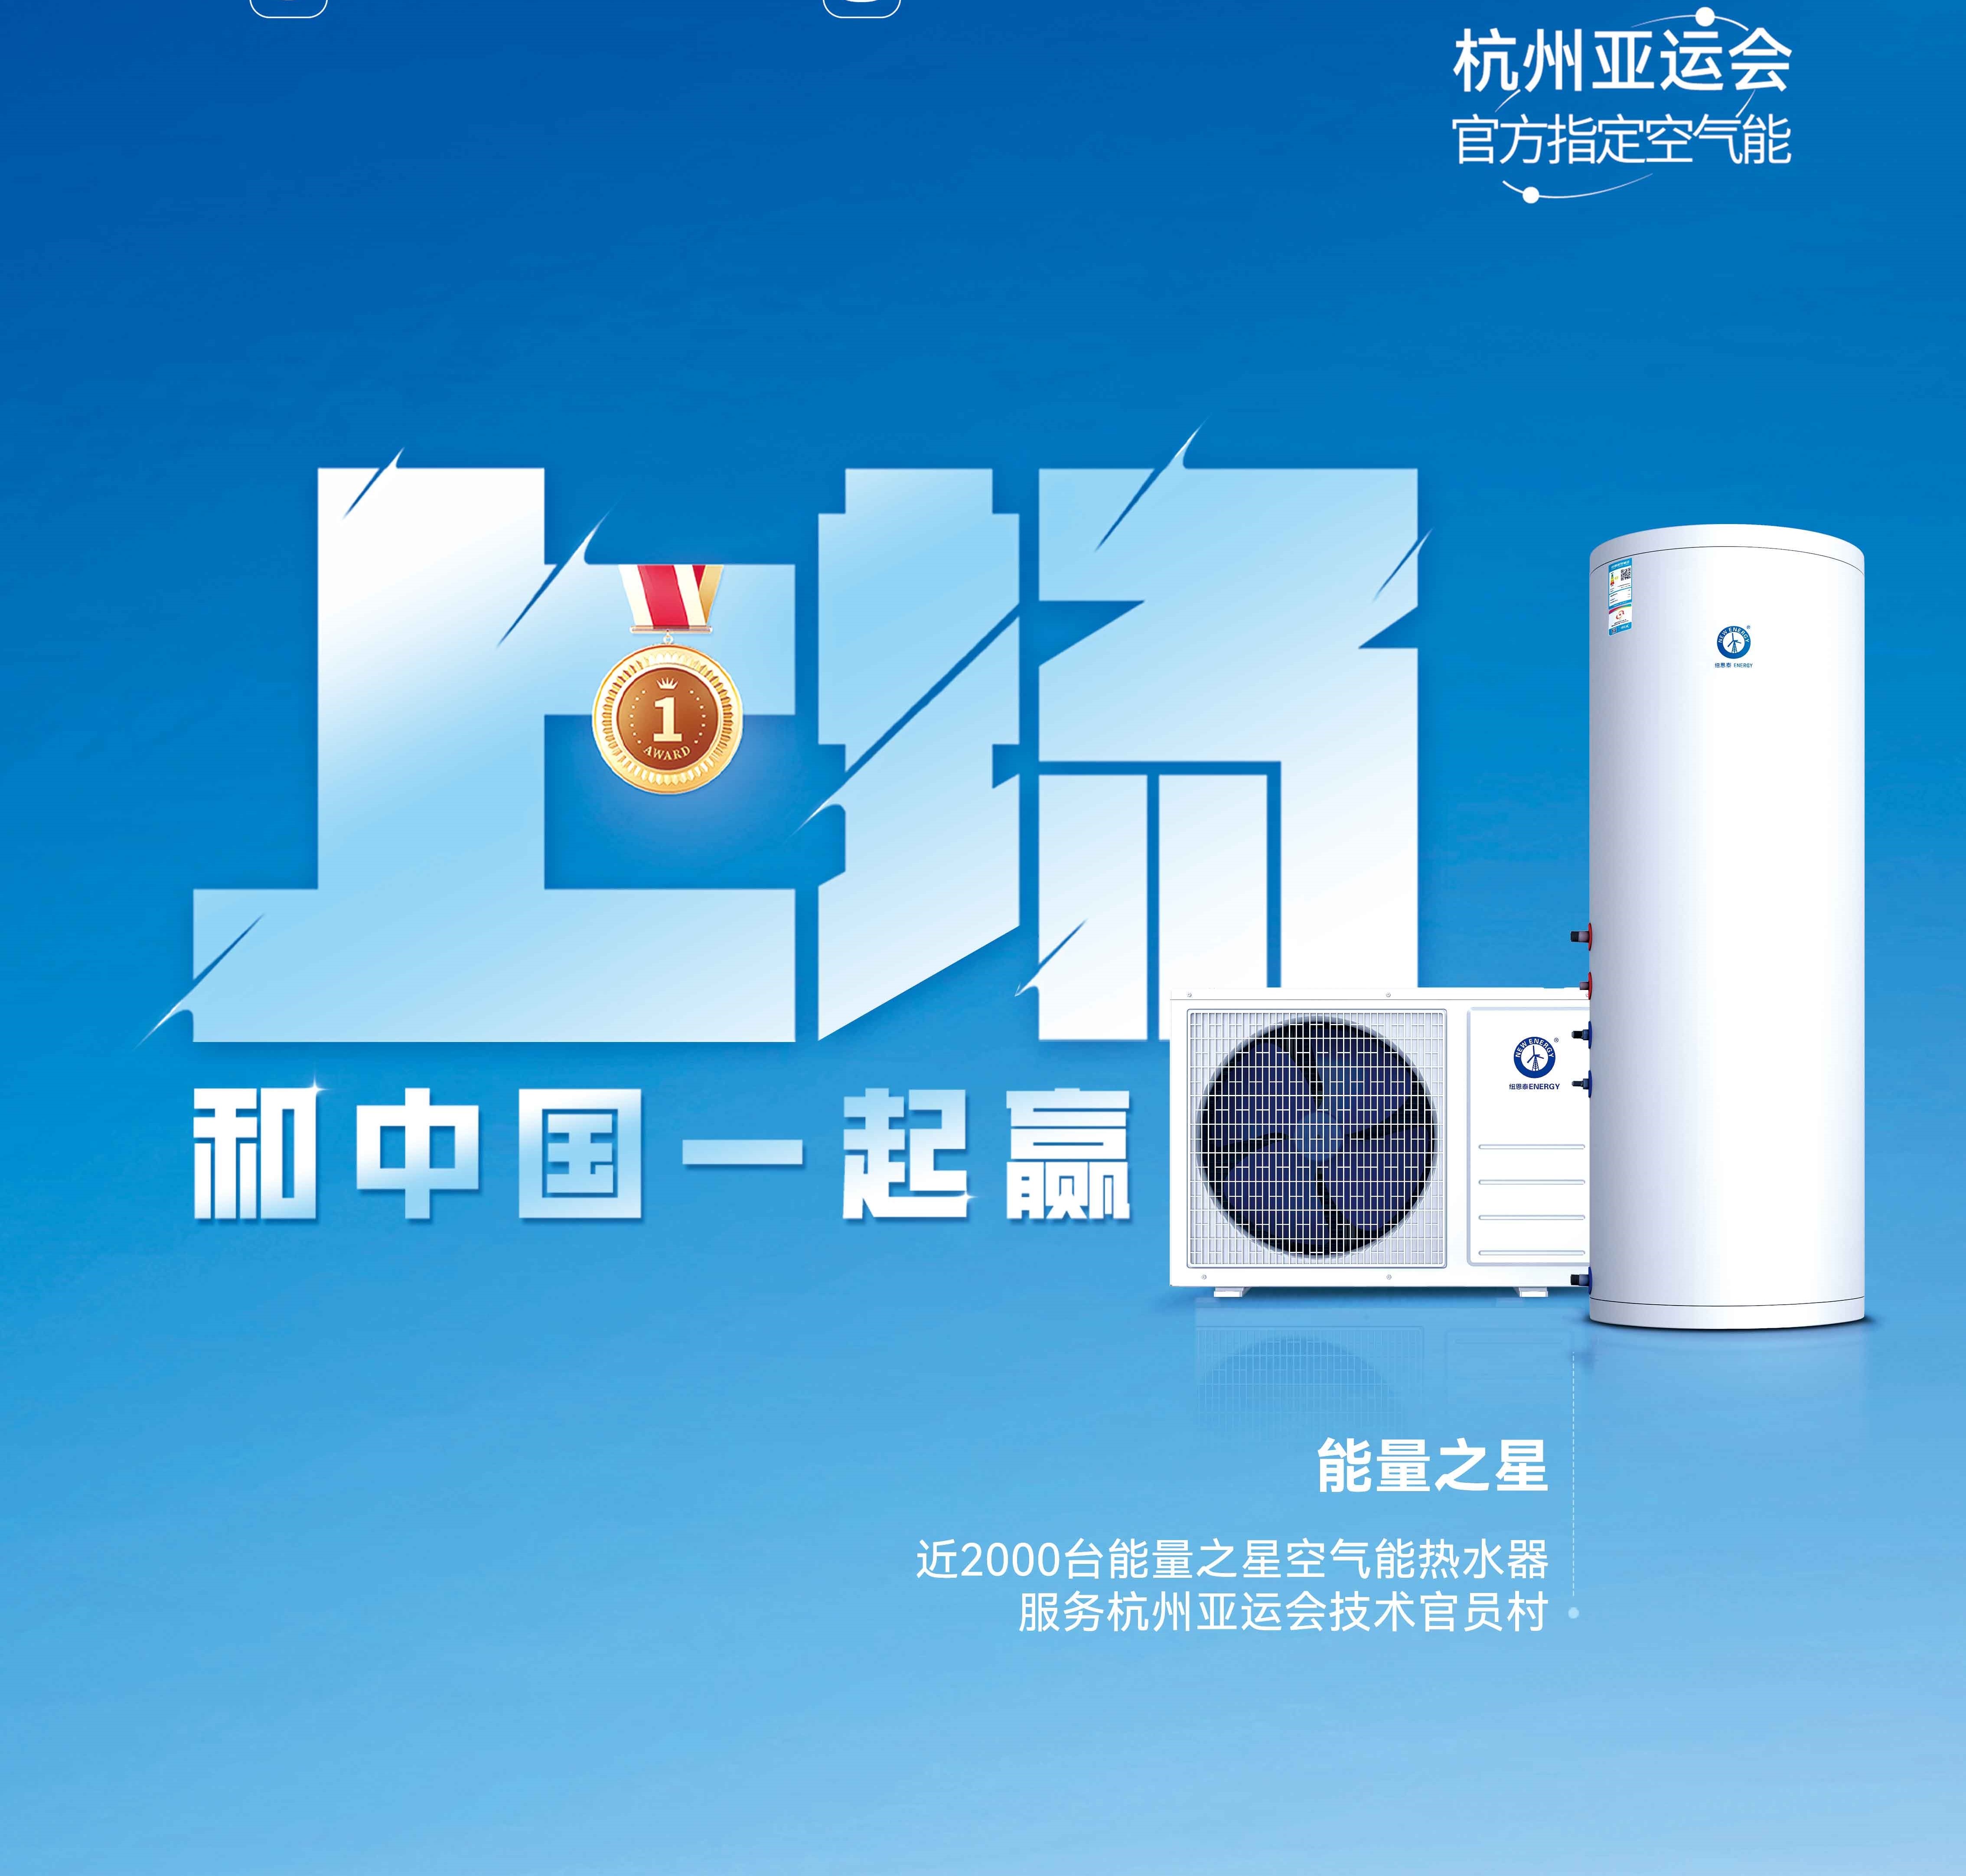 【欧洲杯球赛在哪里买空气能热水器】杭州亚运会亚运技术官员村的热水器用的是哪个供应商的产品？